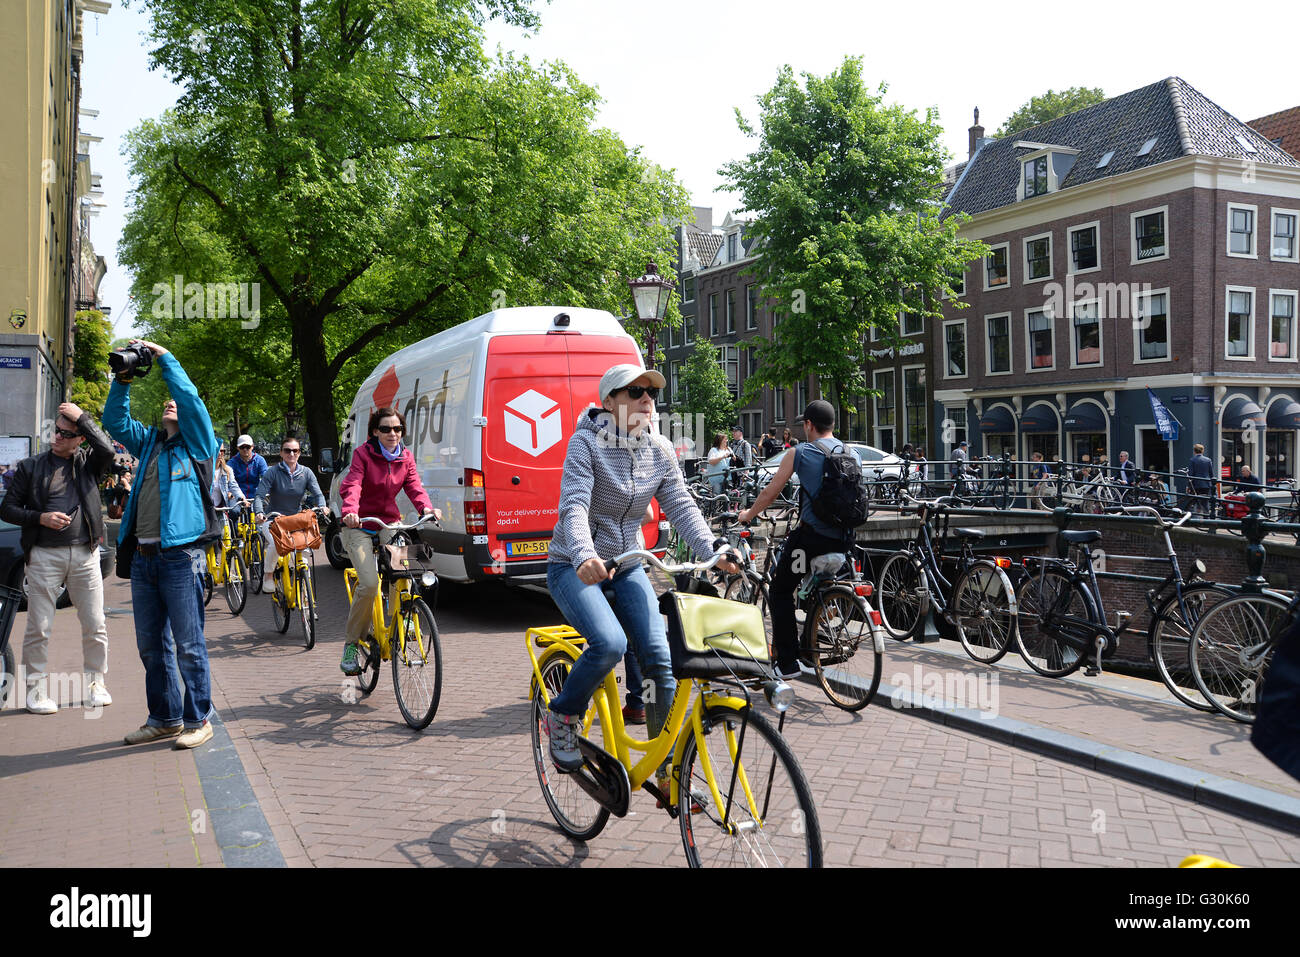 Radfahrer in der Stadt Amsterdam Fahrrad fahren entlang Kanal Straße auf  hellen gelben vermietet Fahrräder Stockfotografie - Alamy